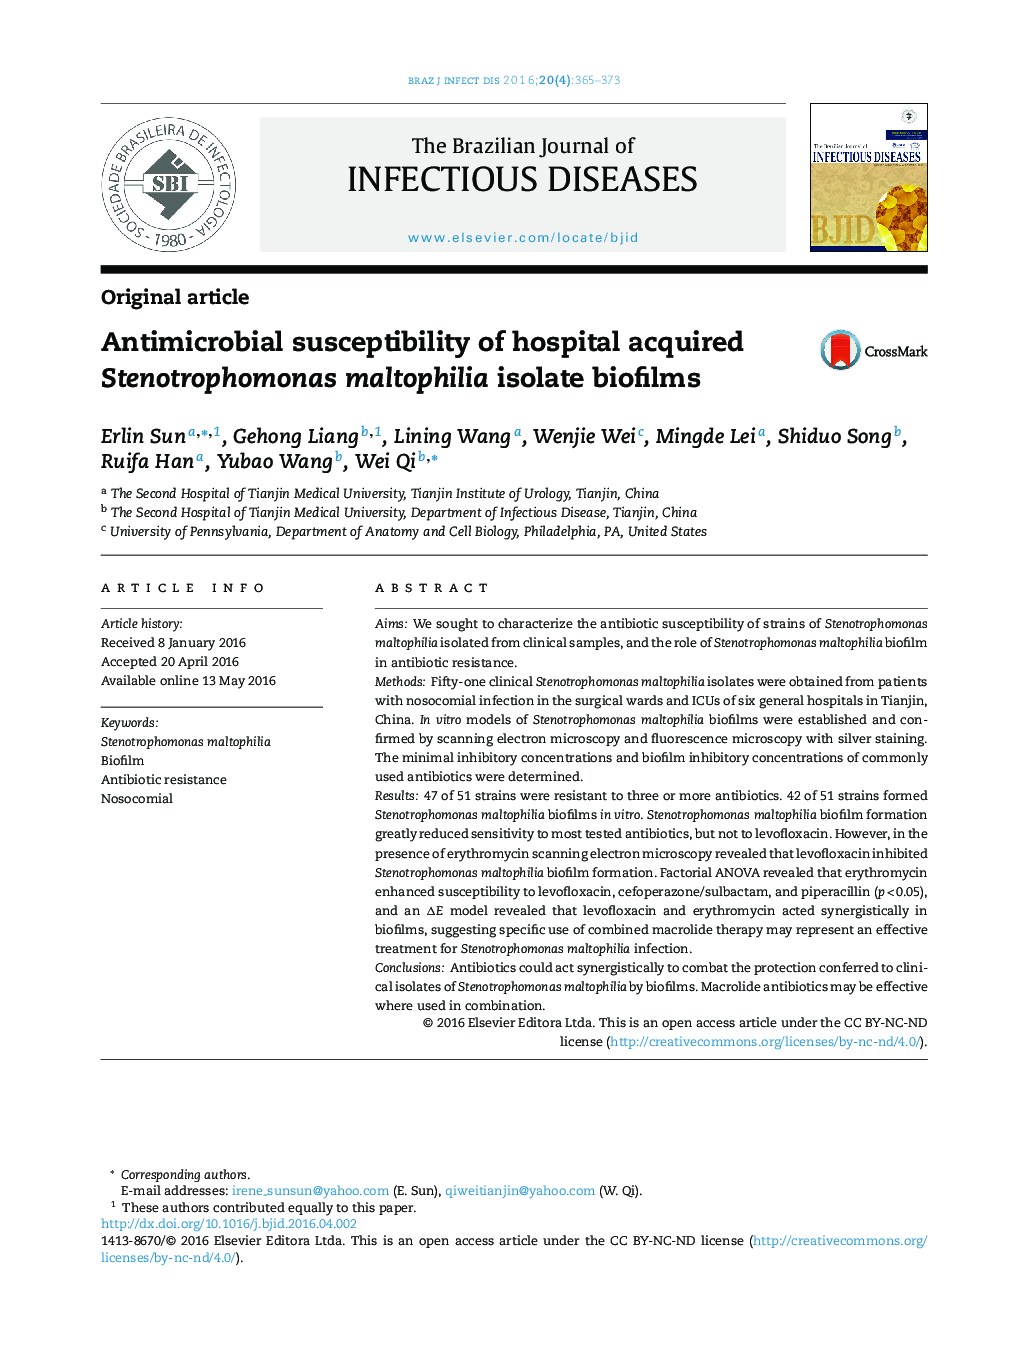 حساسیت ضدمیکروبی بیوفیلم های ایزوله Stenotrophomonas maltophilia حاصل از بیمارستان